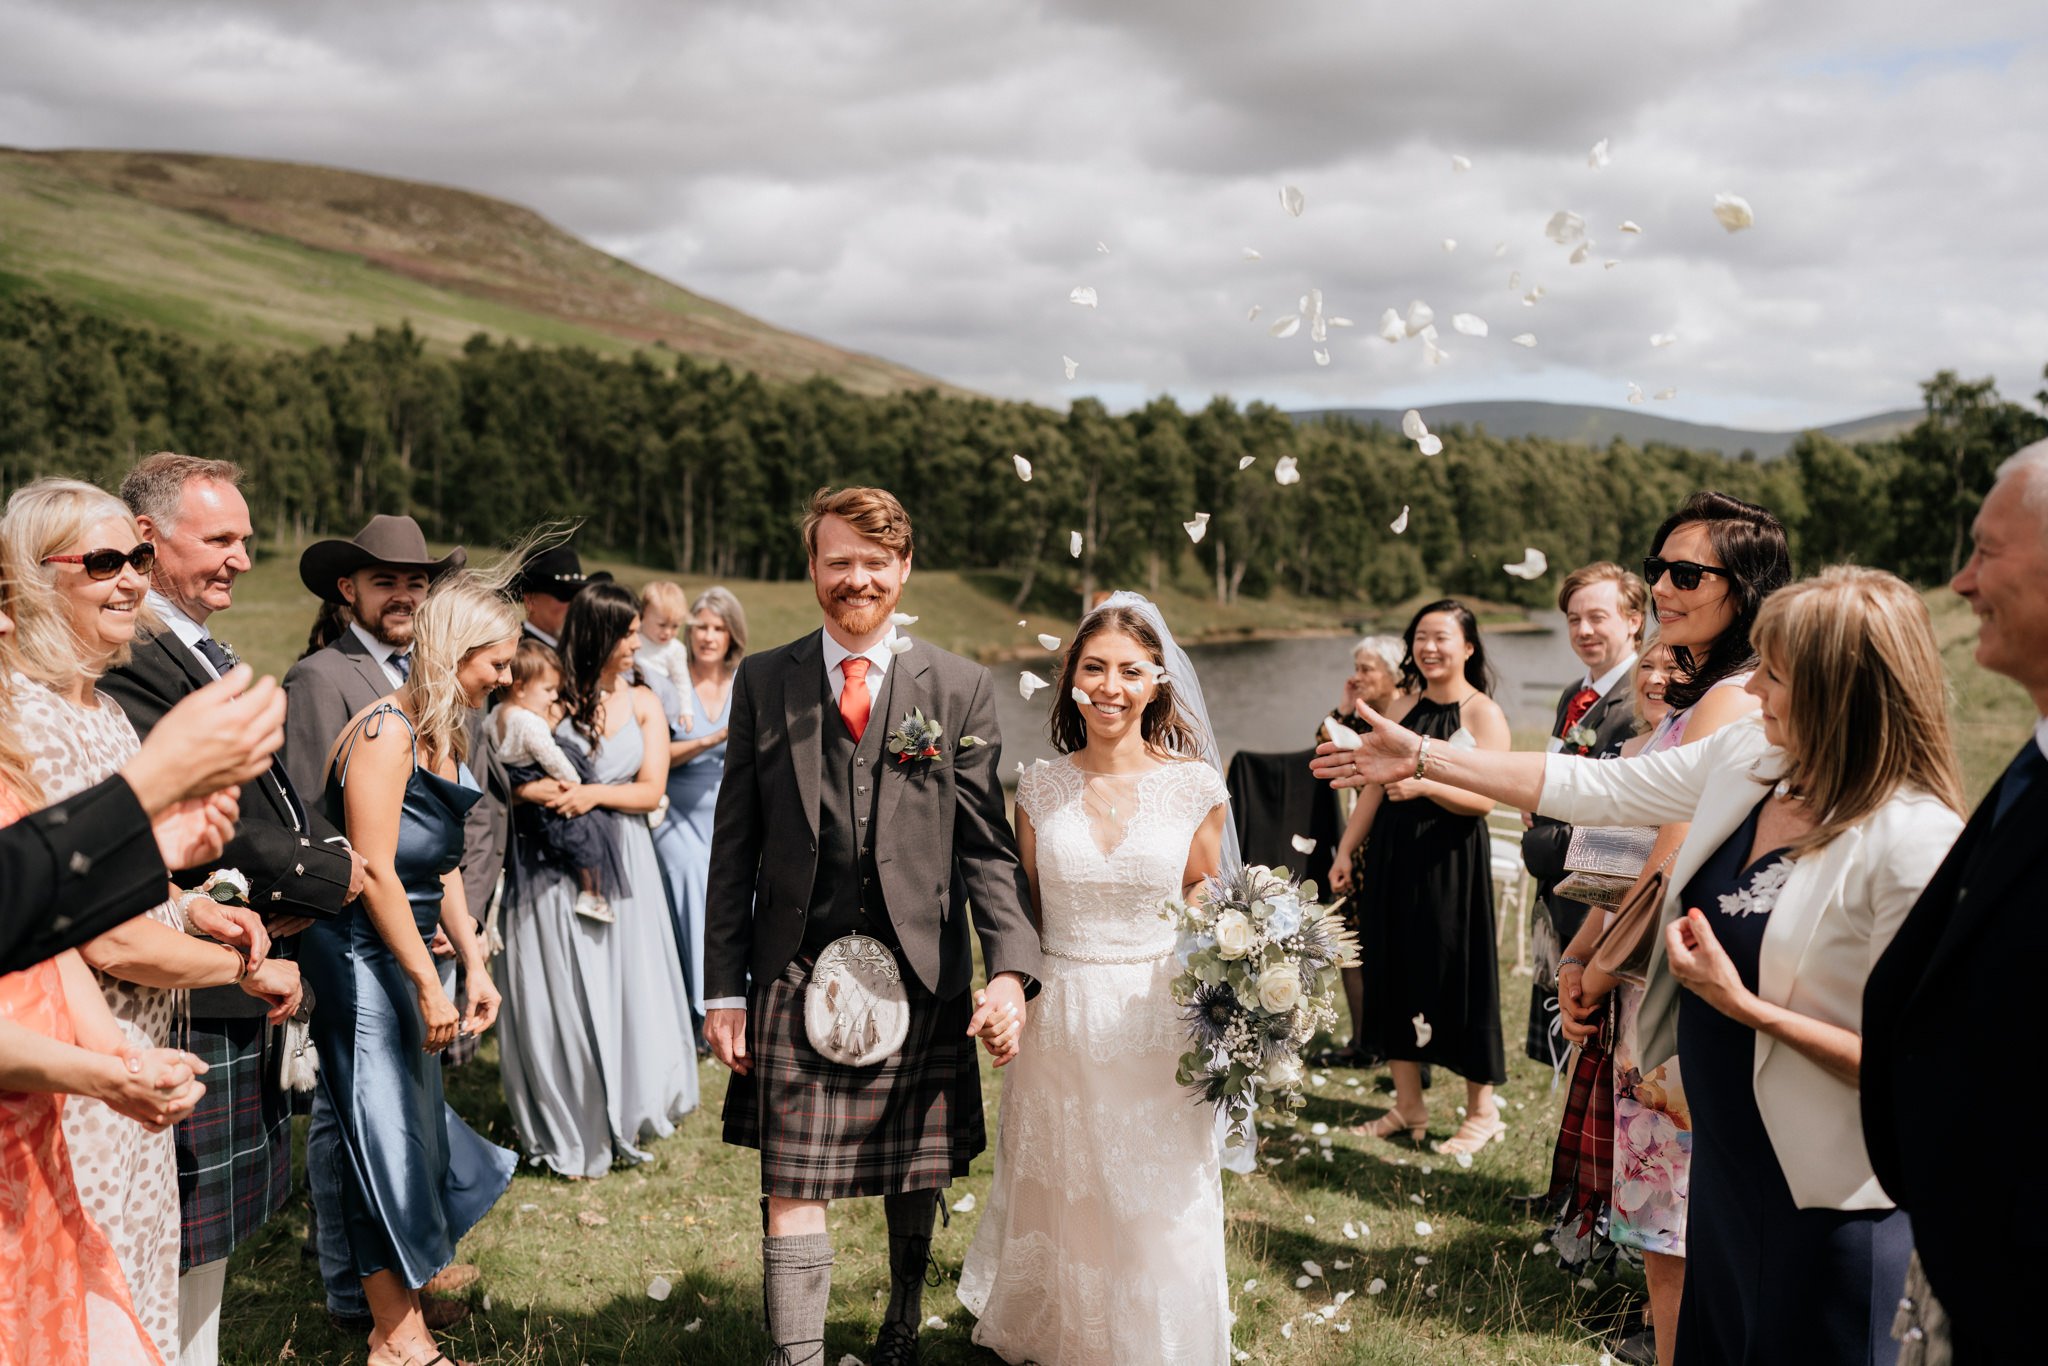 Glen Clova Hotel wedding photography | Aberdeenshire wedding photographer and videographer-36.jpg